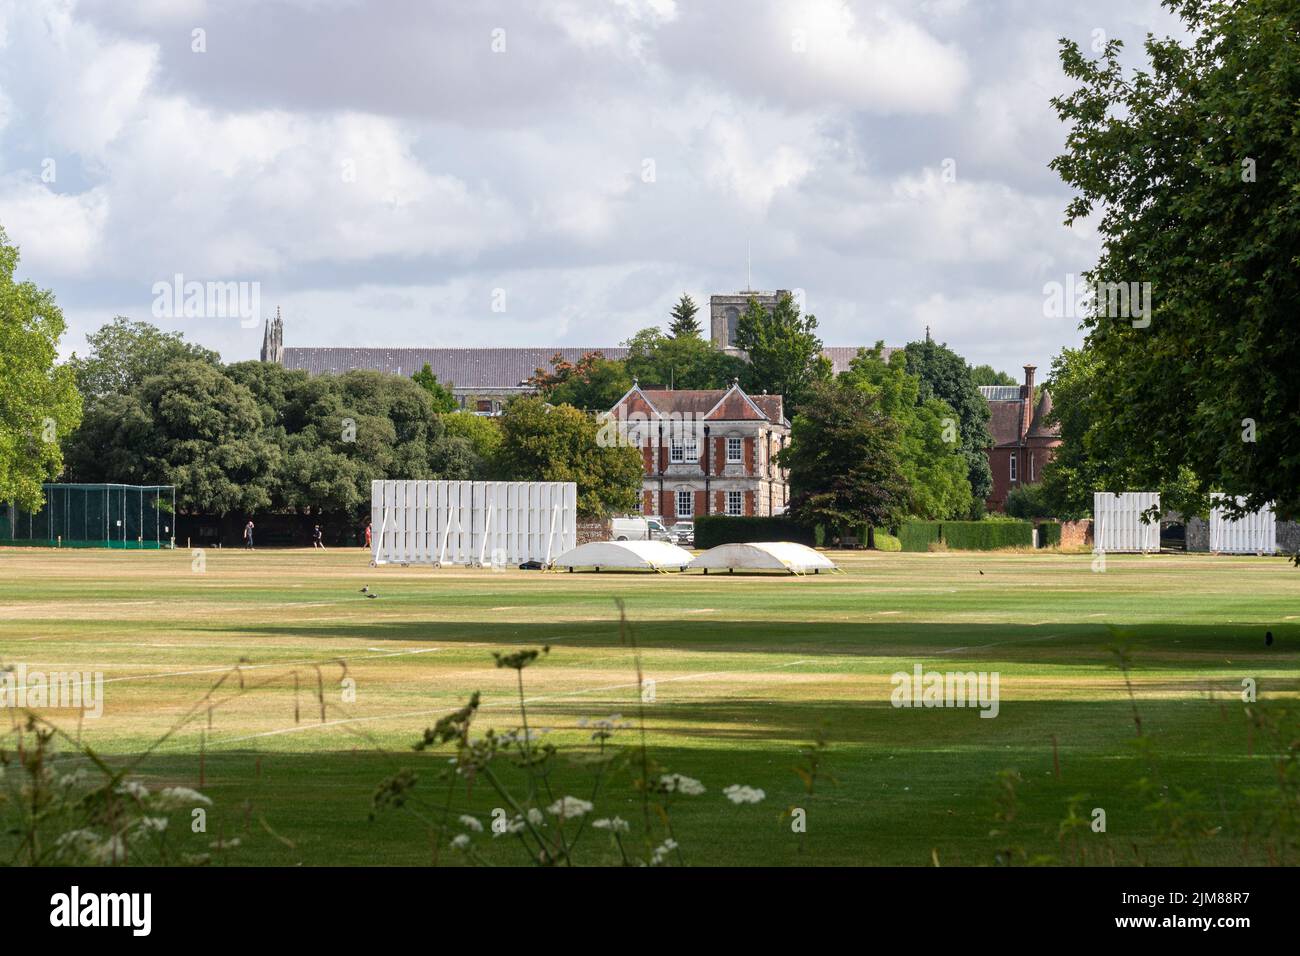 Vue sur les terrains de jeu et les installations sportives de Winchester College, le parc, Winchester, Hampshire, Angleterre, ROYAUME-UNI Banque D'Images